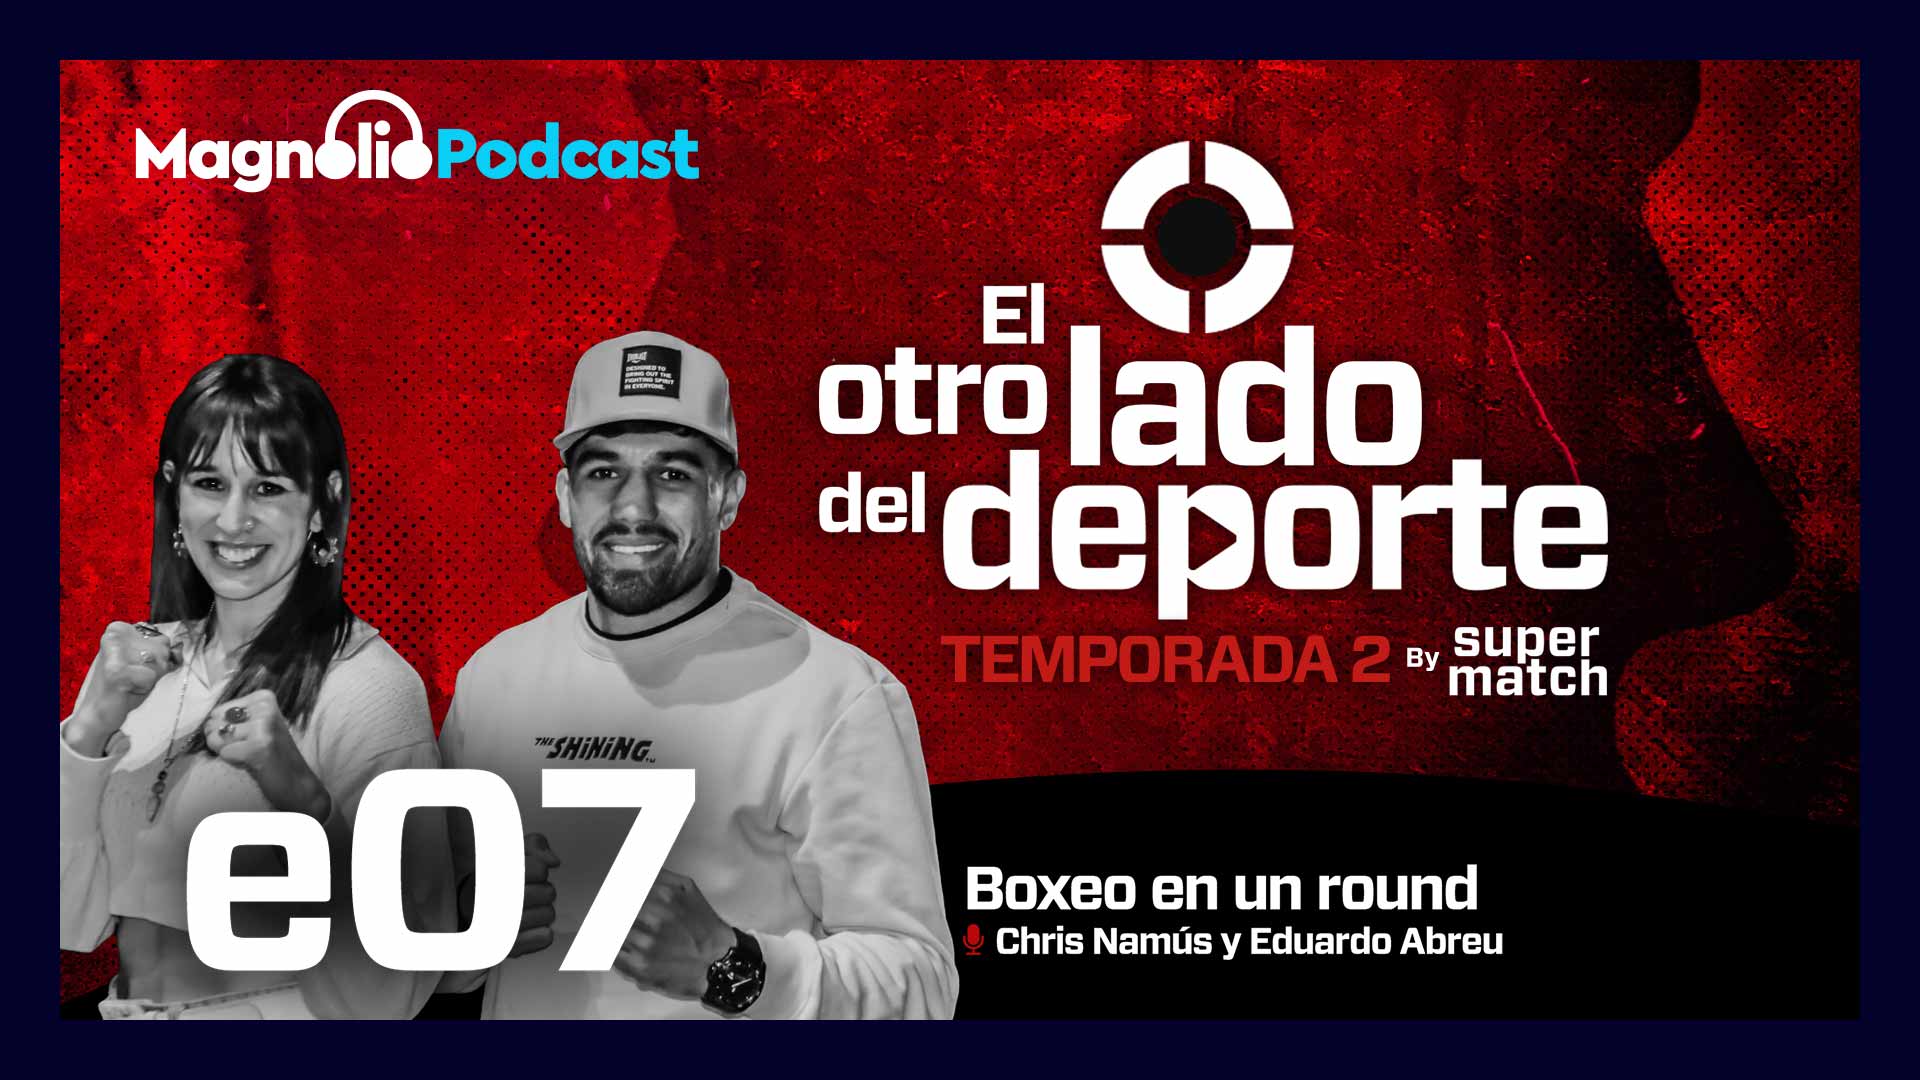 Boxeo en un round - Chris Namús y Eduardo Abreu